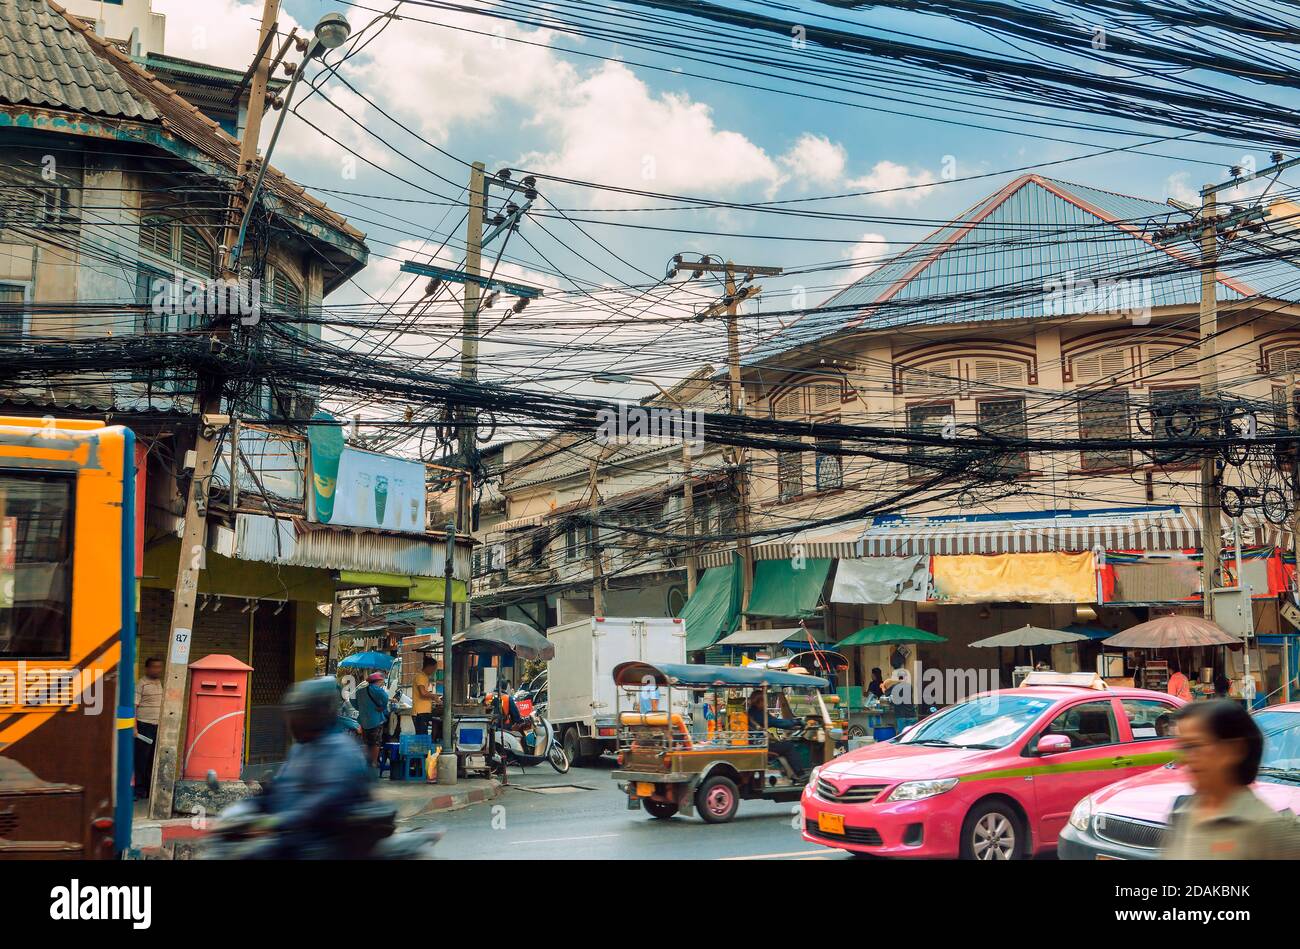 Stile di vita e ambiente di strada a Bangkok, Thailandia. Tuk tuk traffico, taxi rosa e autobus tradizionali. Groviglio di cavi elettrici e facciate di case Foto Stock